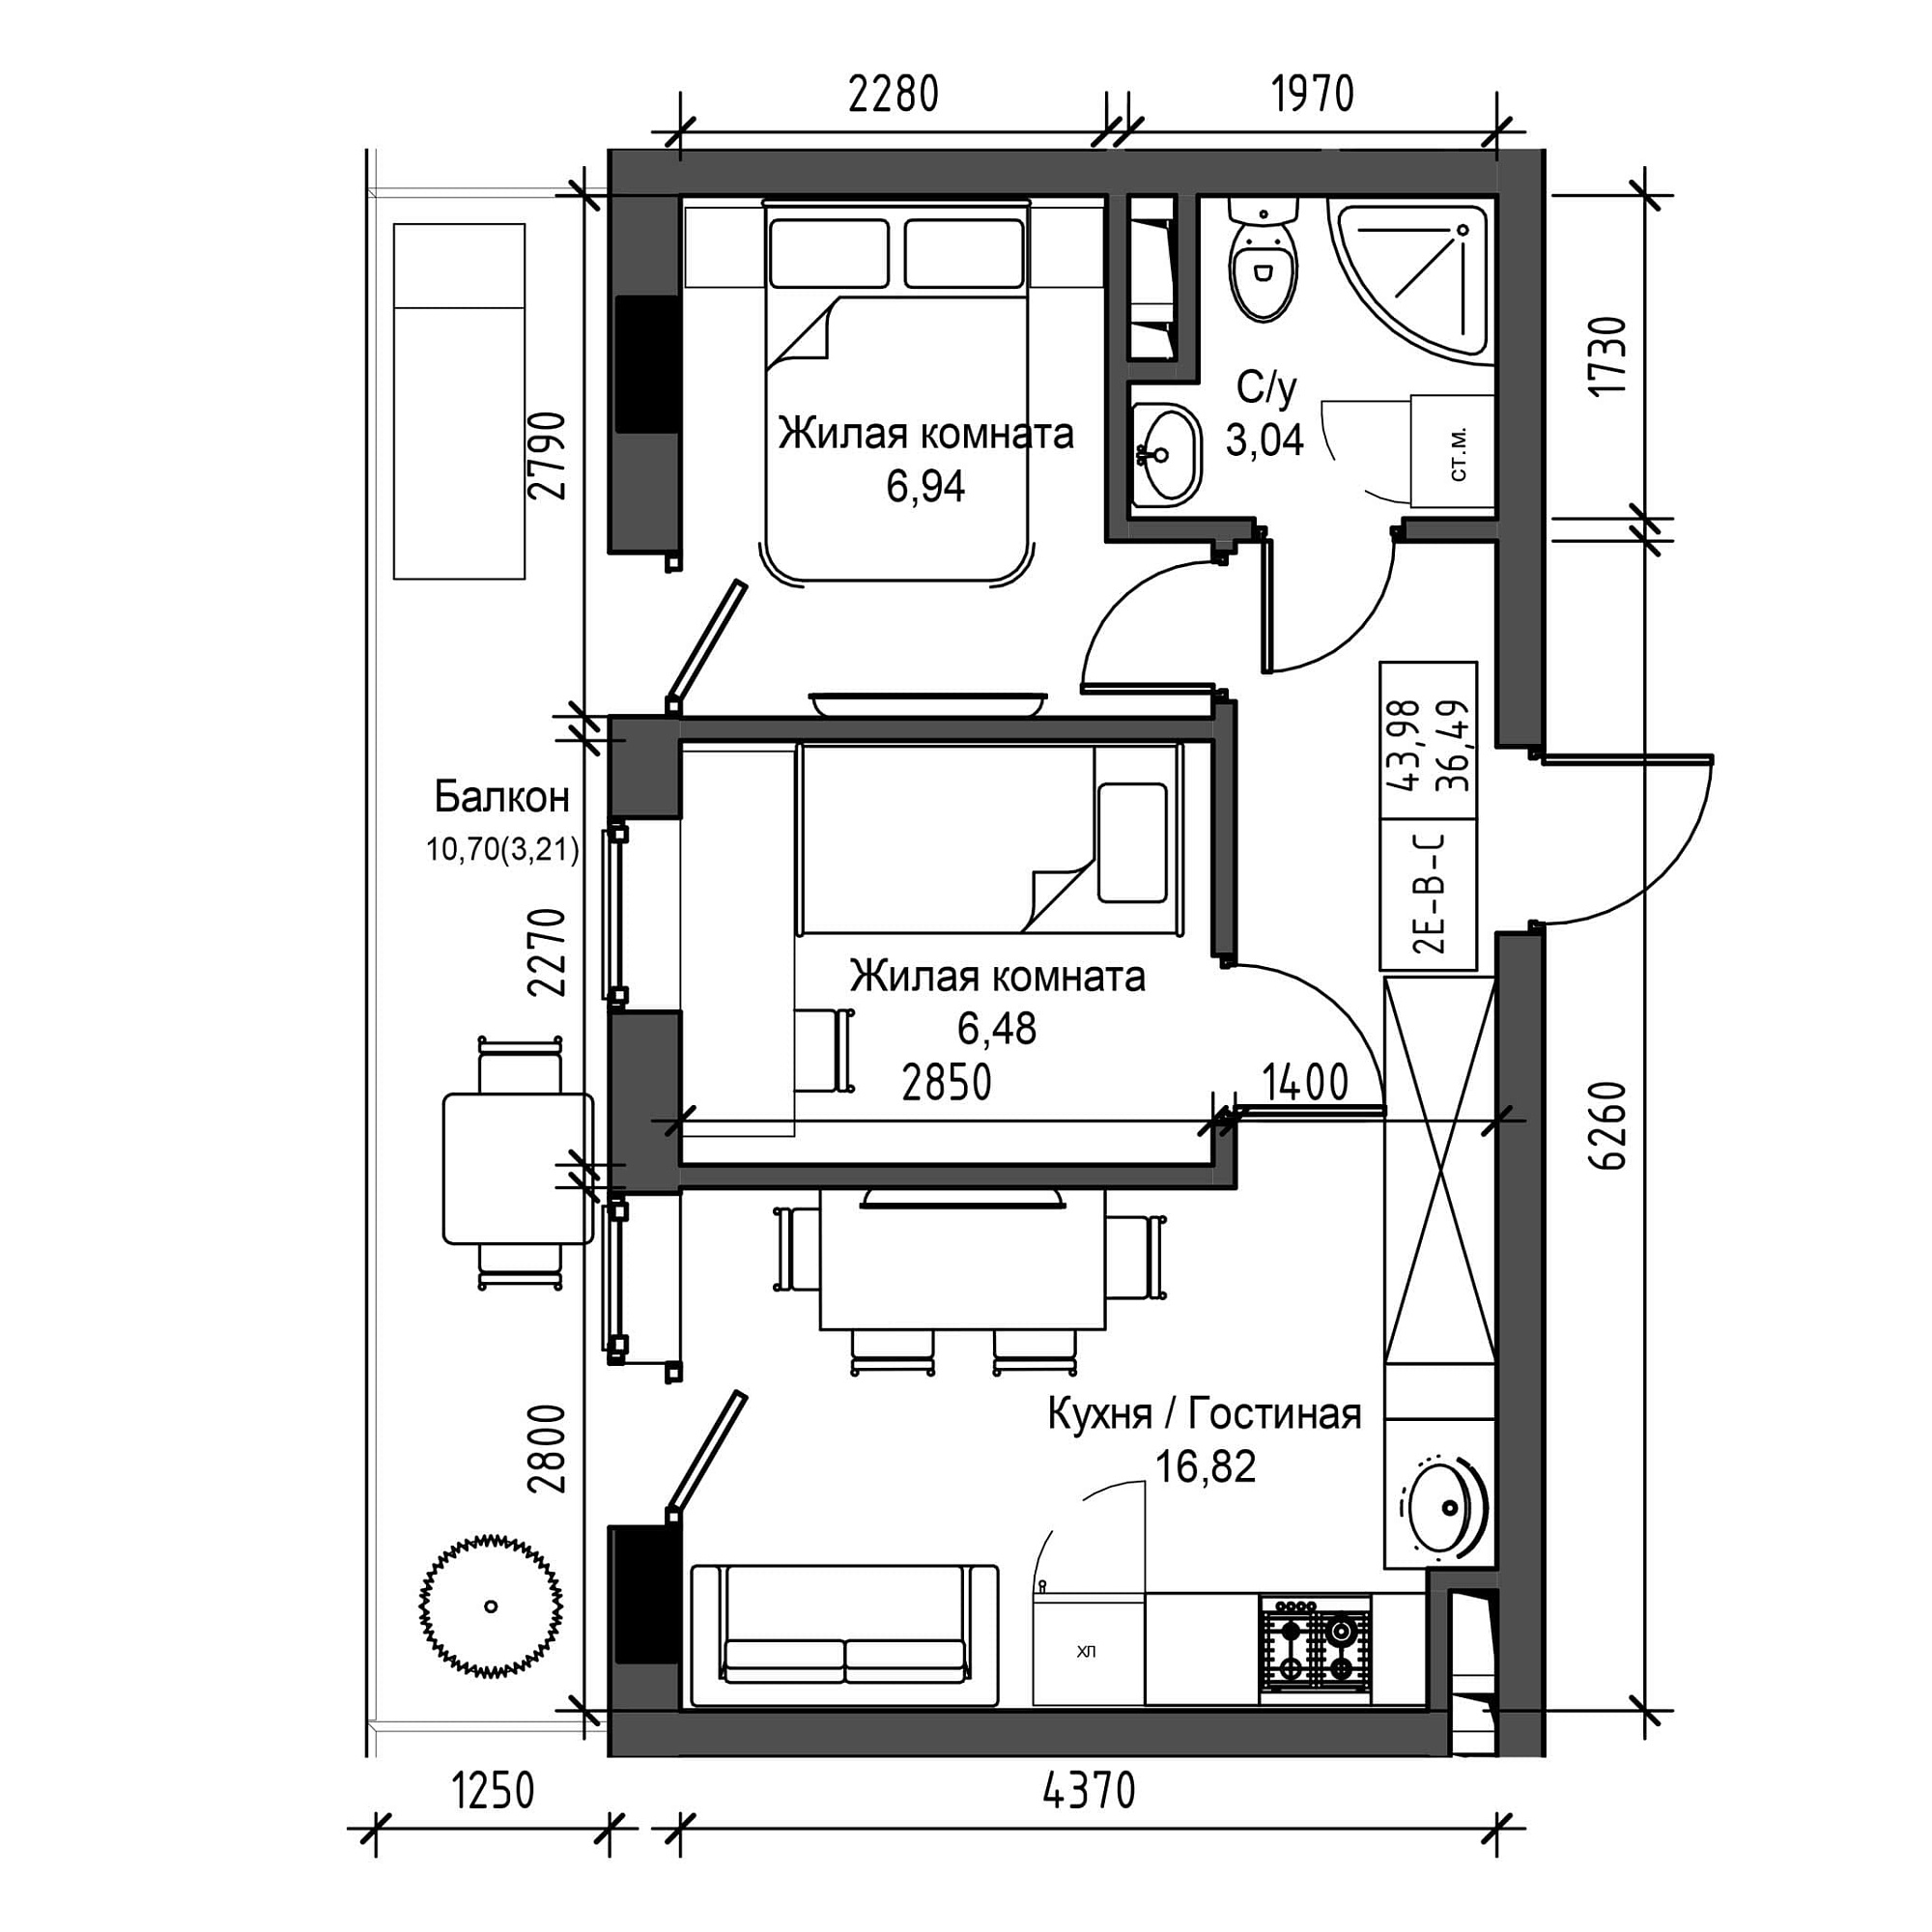 Планировка 2-к квартира площей 36.49м2, UM-001-08/0017.